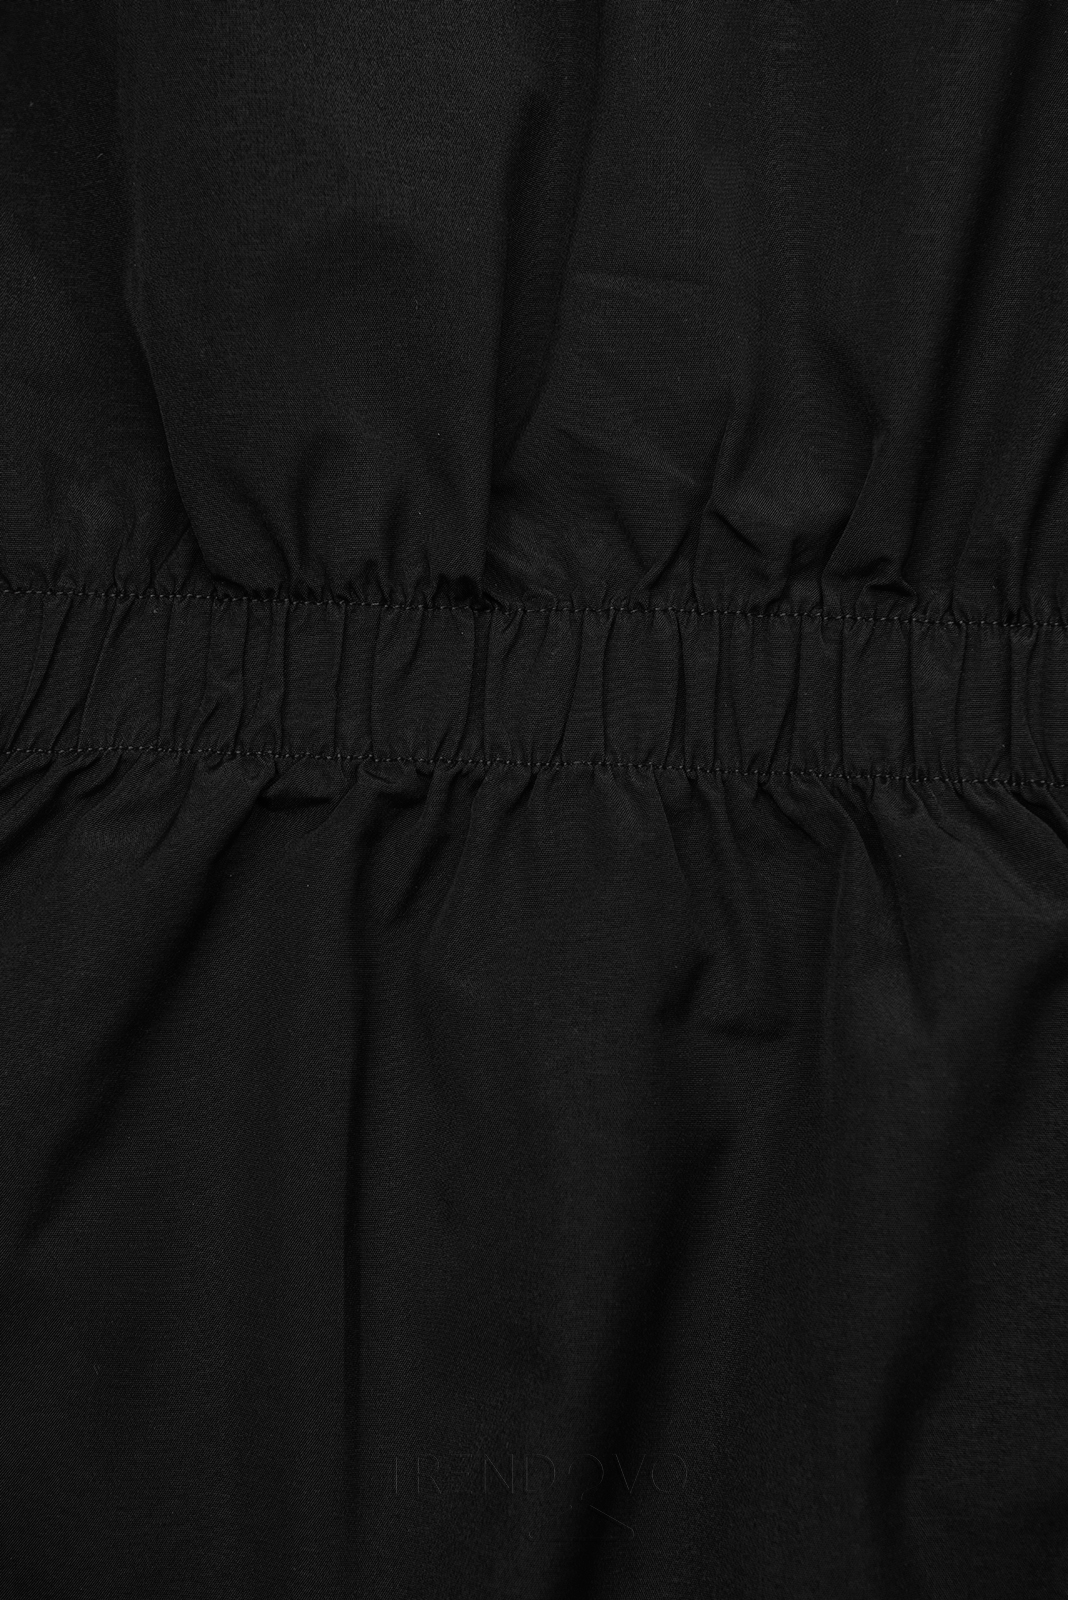 Černá oboustranná bunda s pepito vzorem